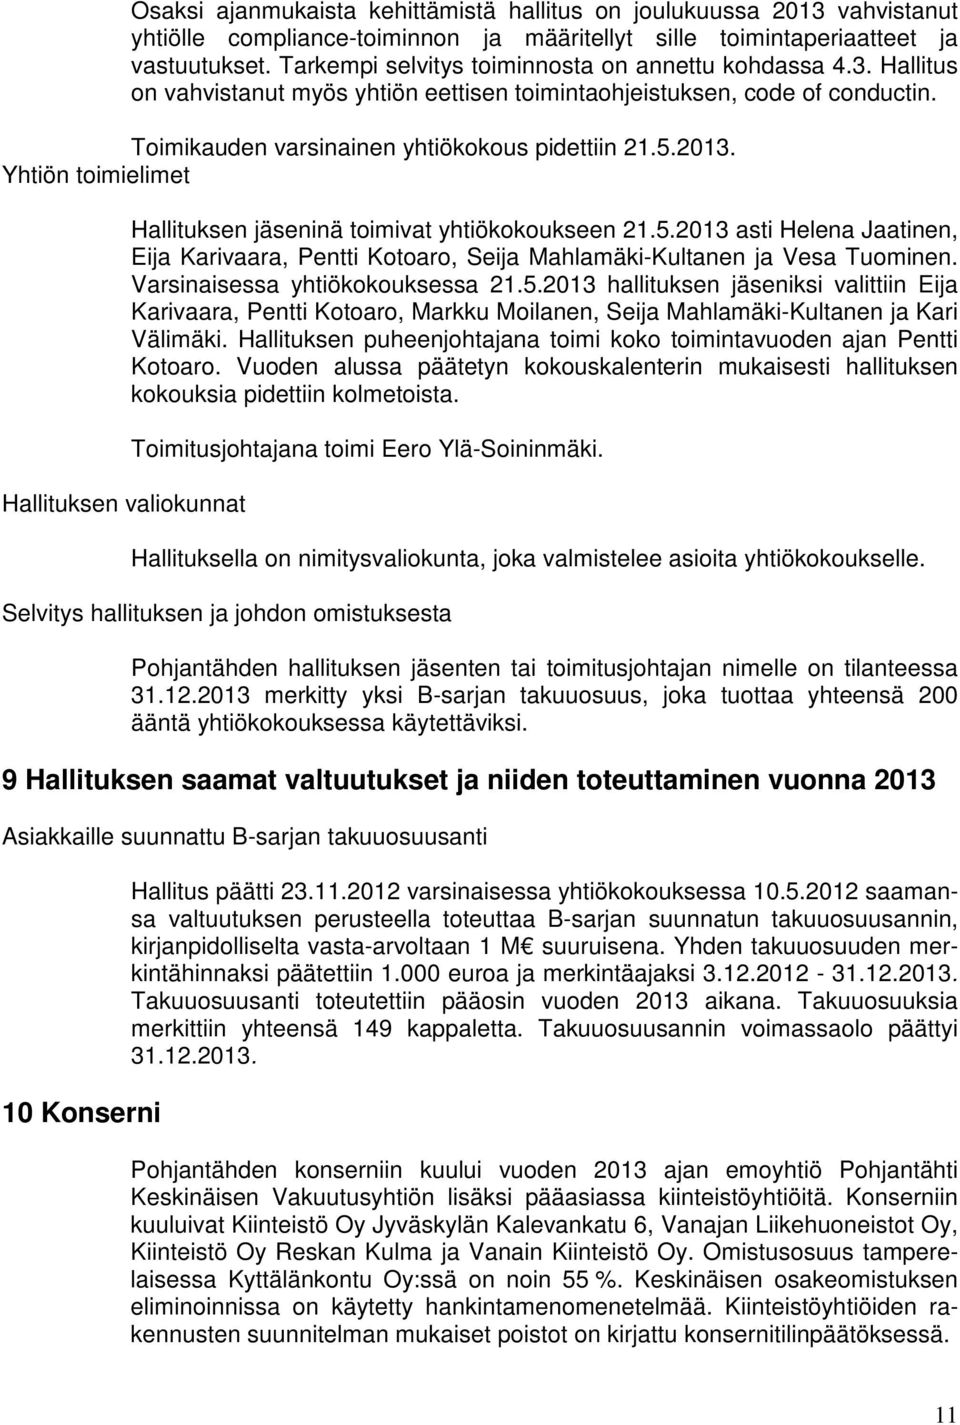 Yhtiön toimielimet Hallituksen valiokunnat Hallituksen jäseninä toimivat yhtiökokoukseen 21.5.2013 asti Helena Jaatinen, Eija Karivaara, Pentti Kotoaro, Seija Mahlamäki-Kultanen ja Vesa Tuominen.